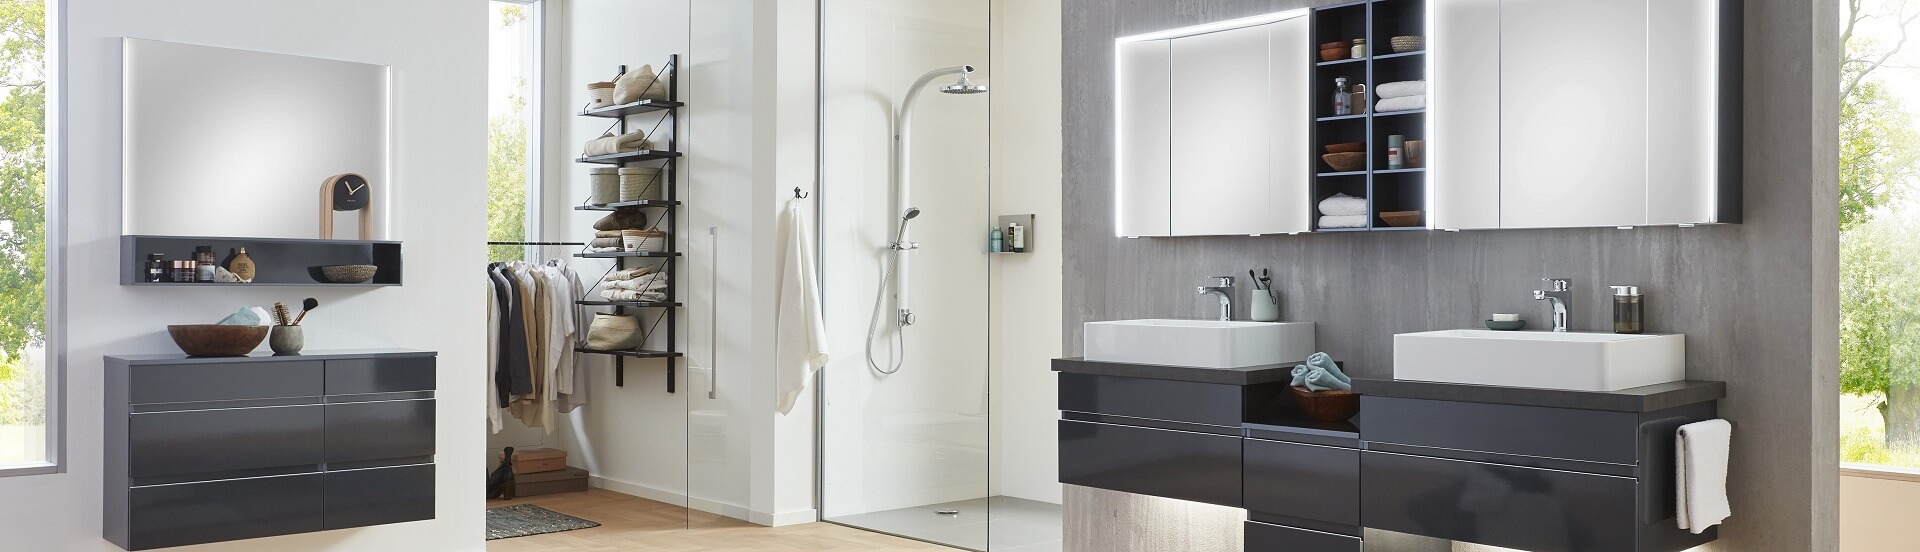 Großes, modernes Badezimmer mit Spiegelschränken und schwarzen Unterschränken